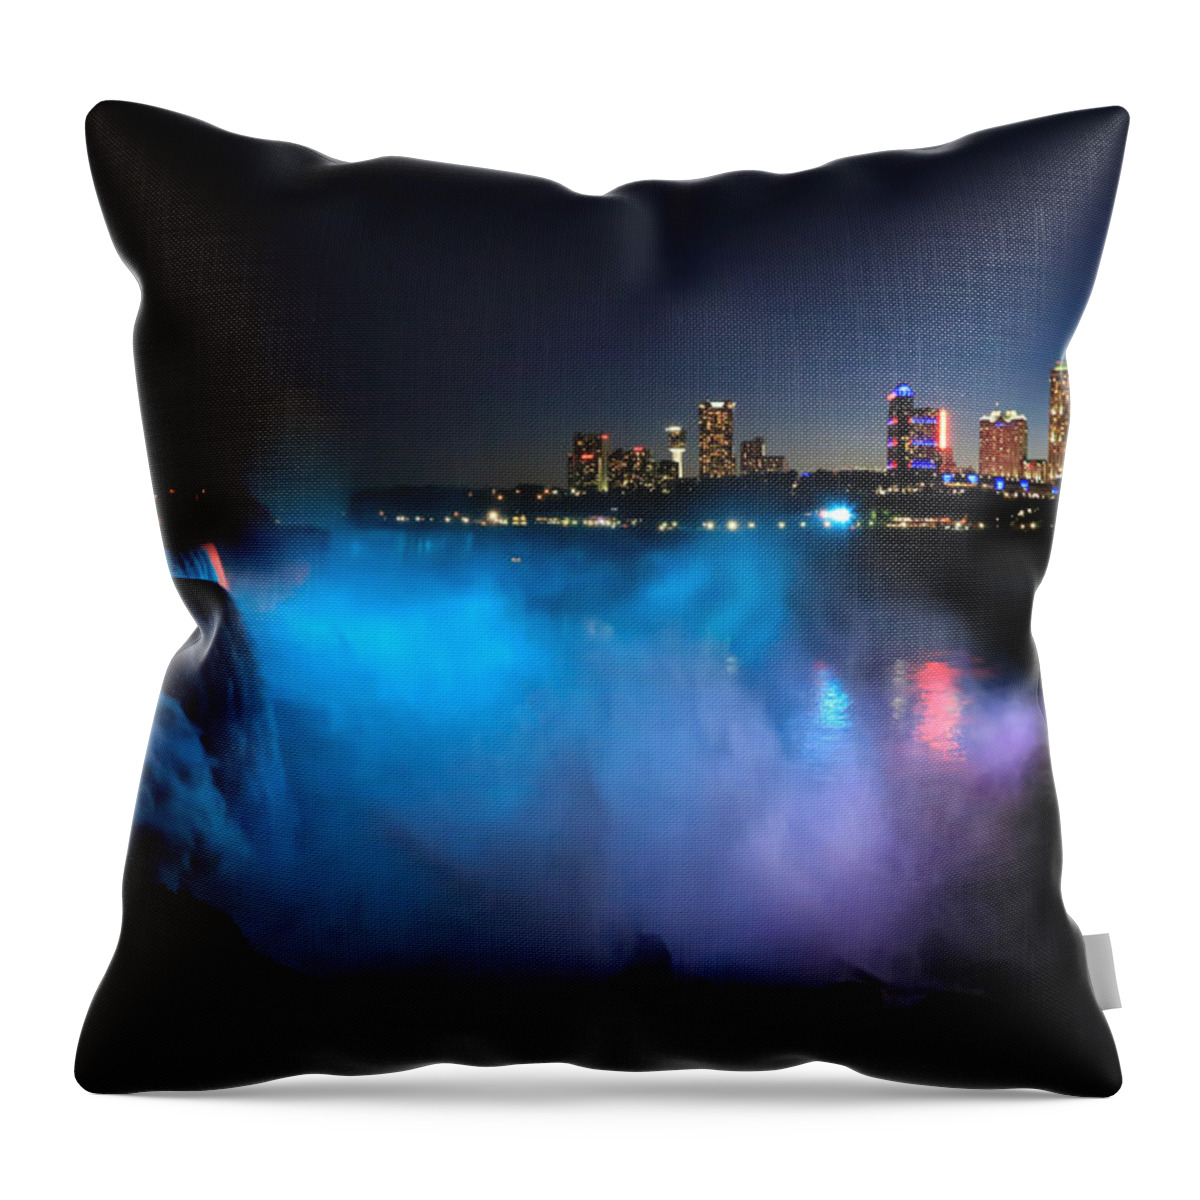 Niagara Falls At Night Throw Pillow featuring the photograph Niagara Falls at Night by Rachel Cohen